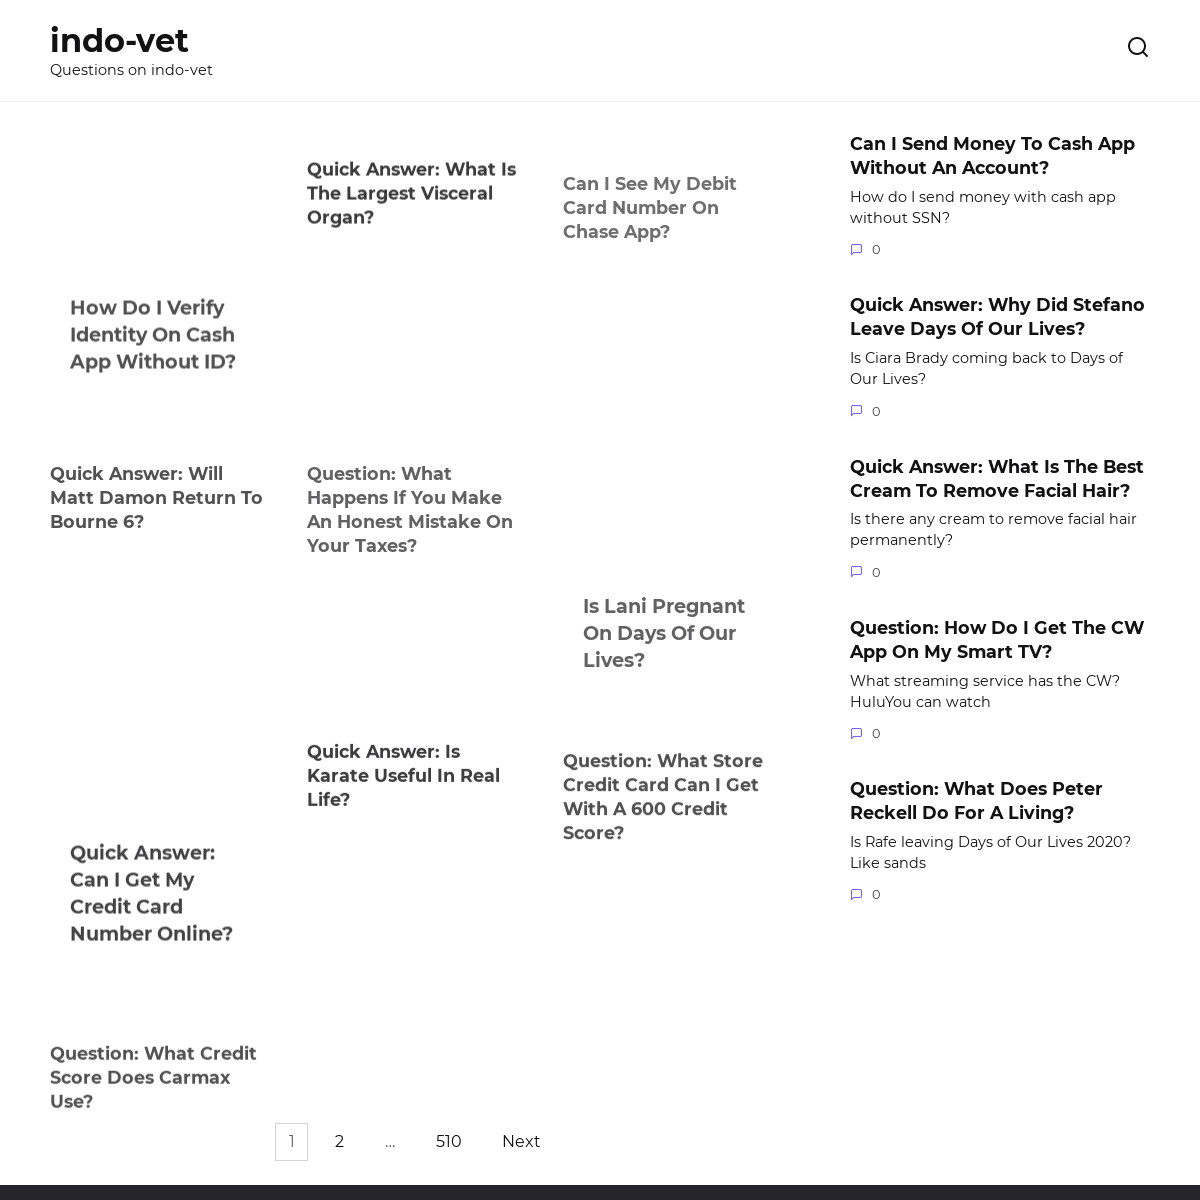 A complete backup of https://indo-vet.com